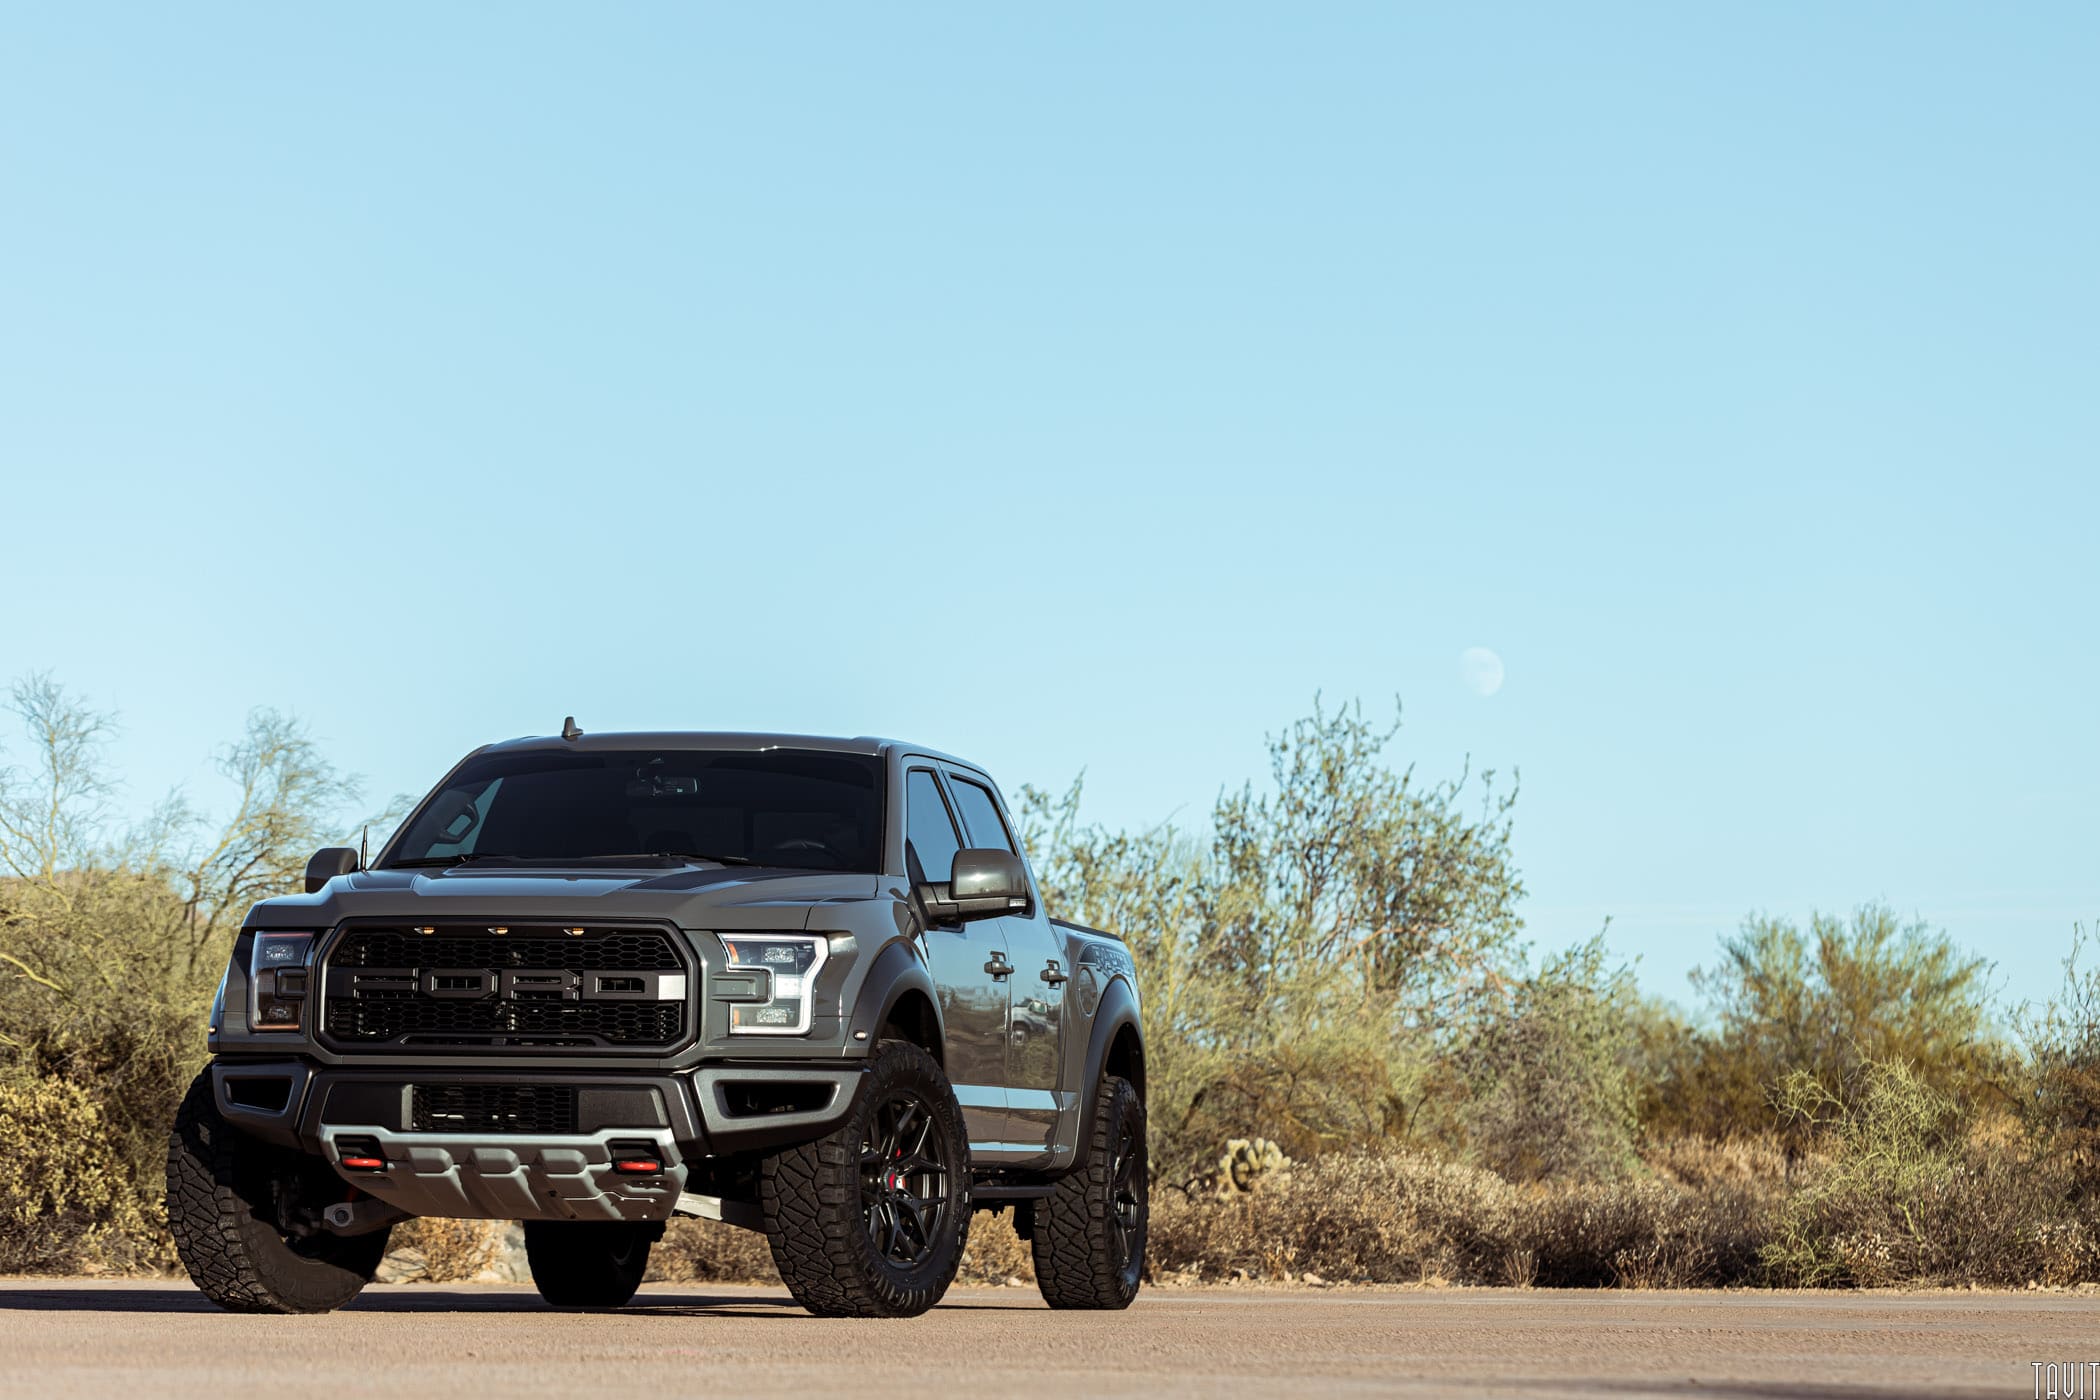 Ford Raptor in AZ desert